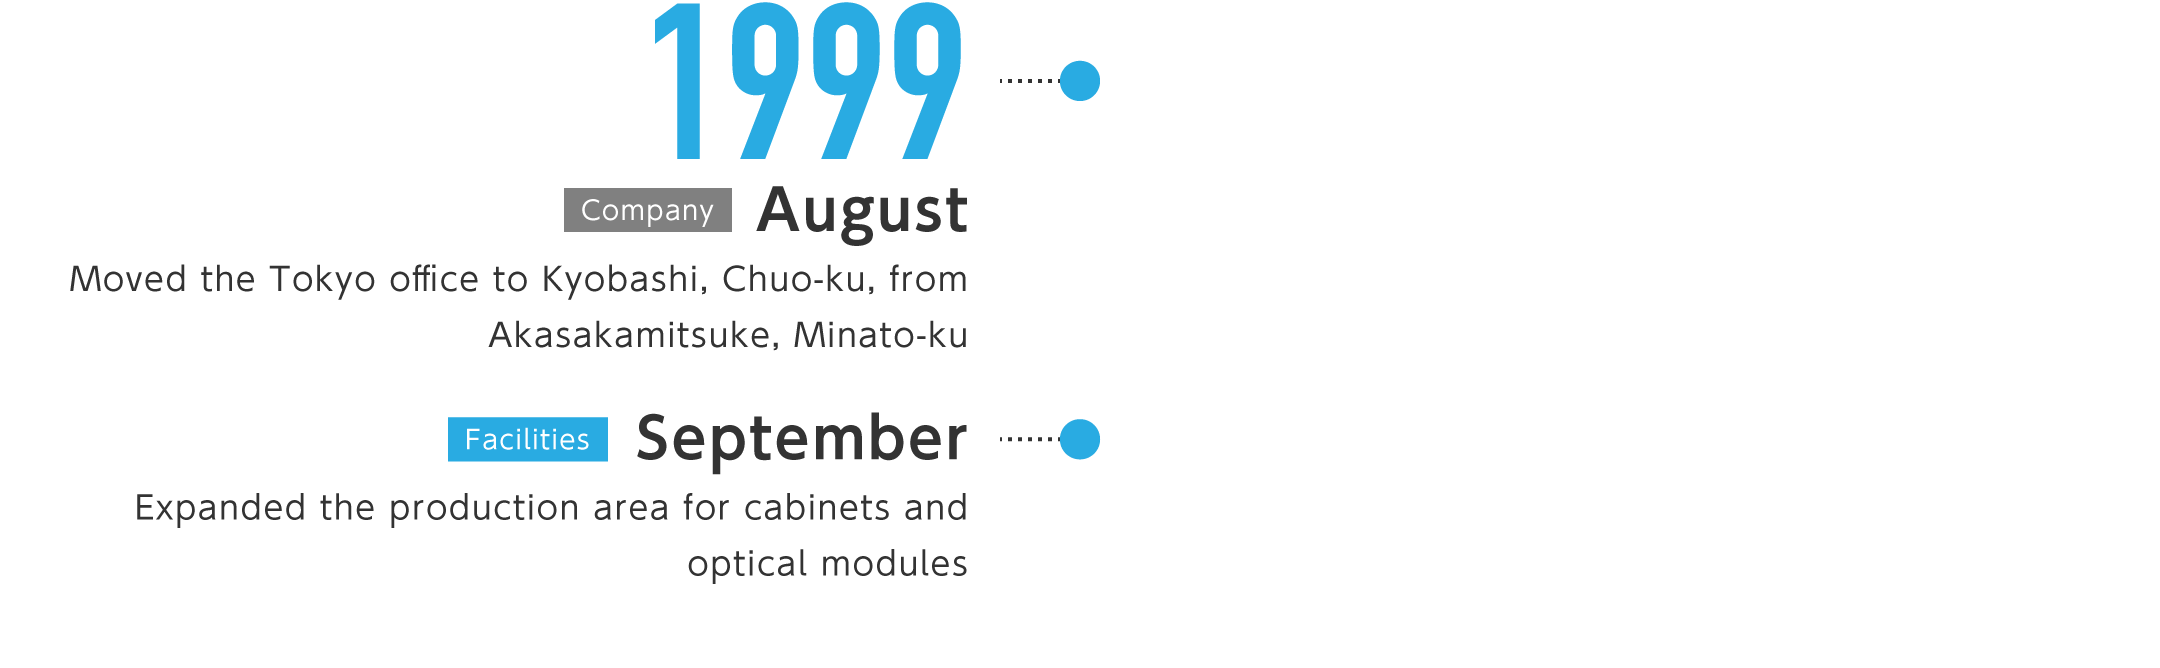 1999年8月-東京事務所を港区赤坂見附から中央区京橋に移転、9月-キャビネット、光モジュールの生産エリアを拡張